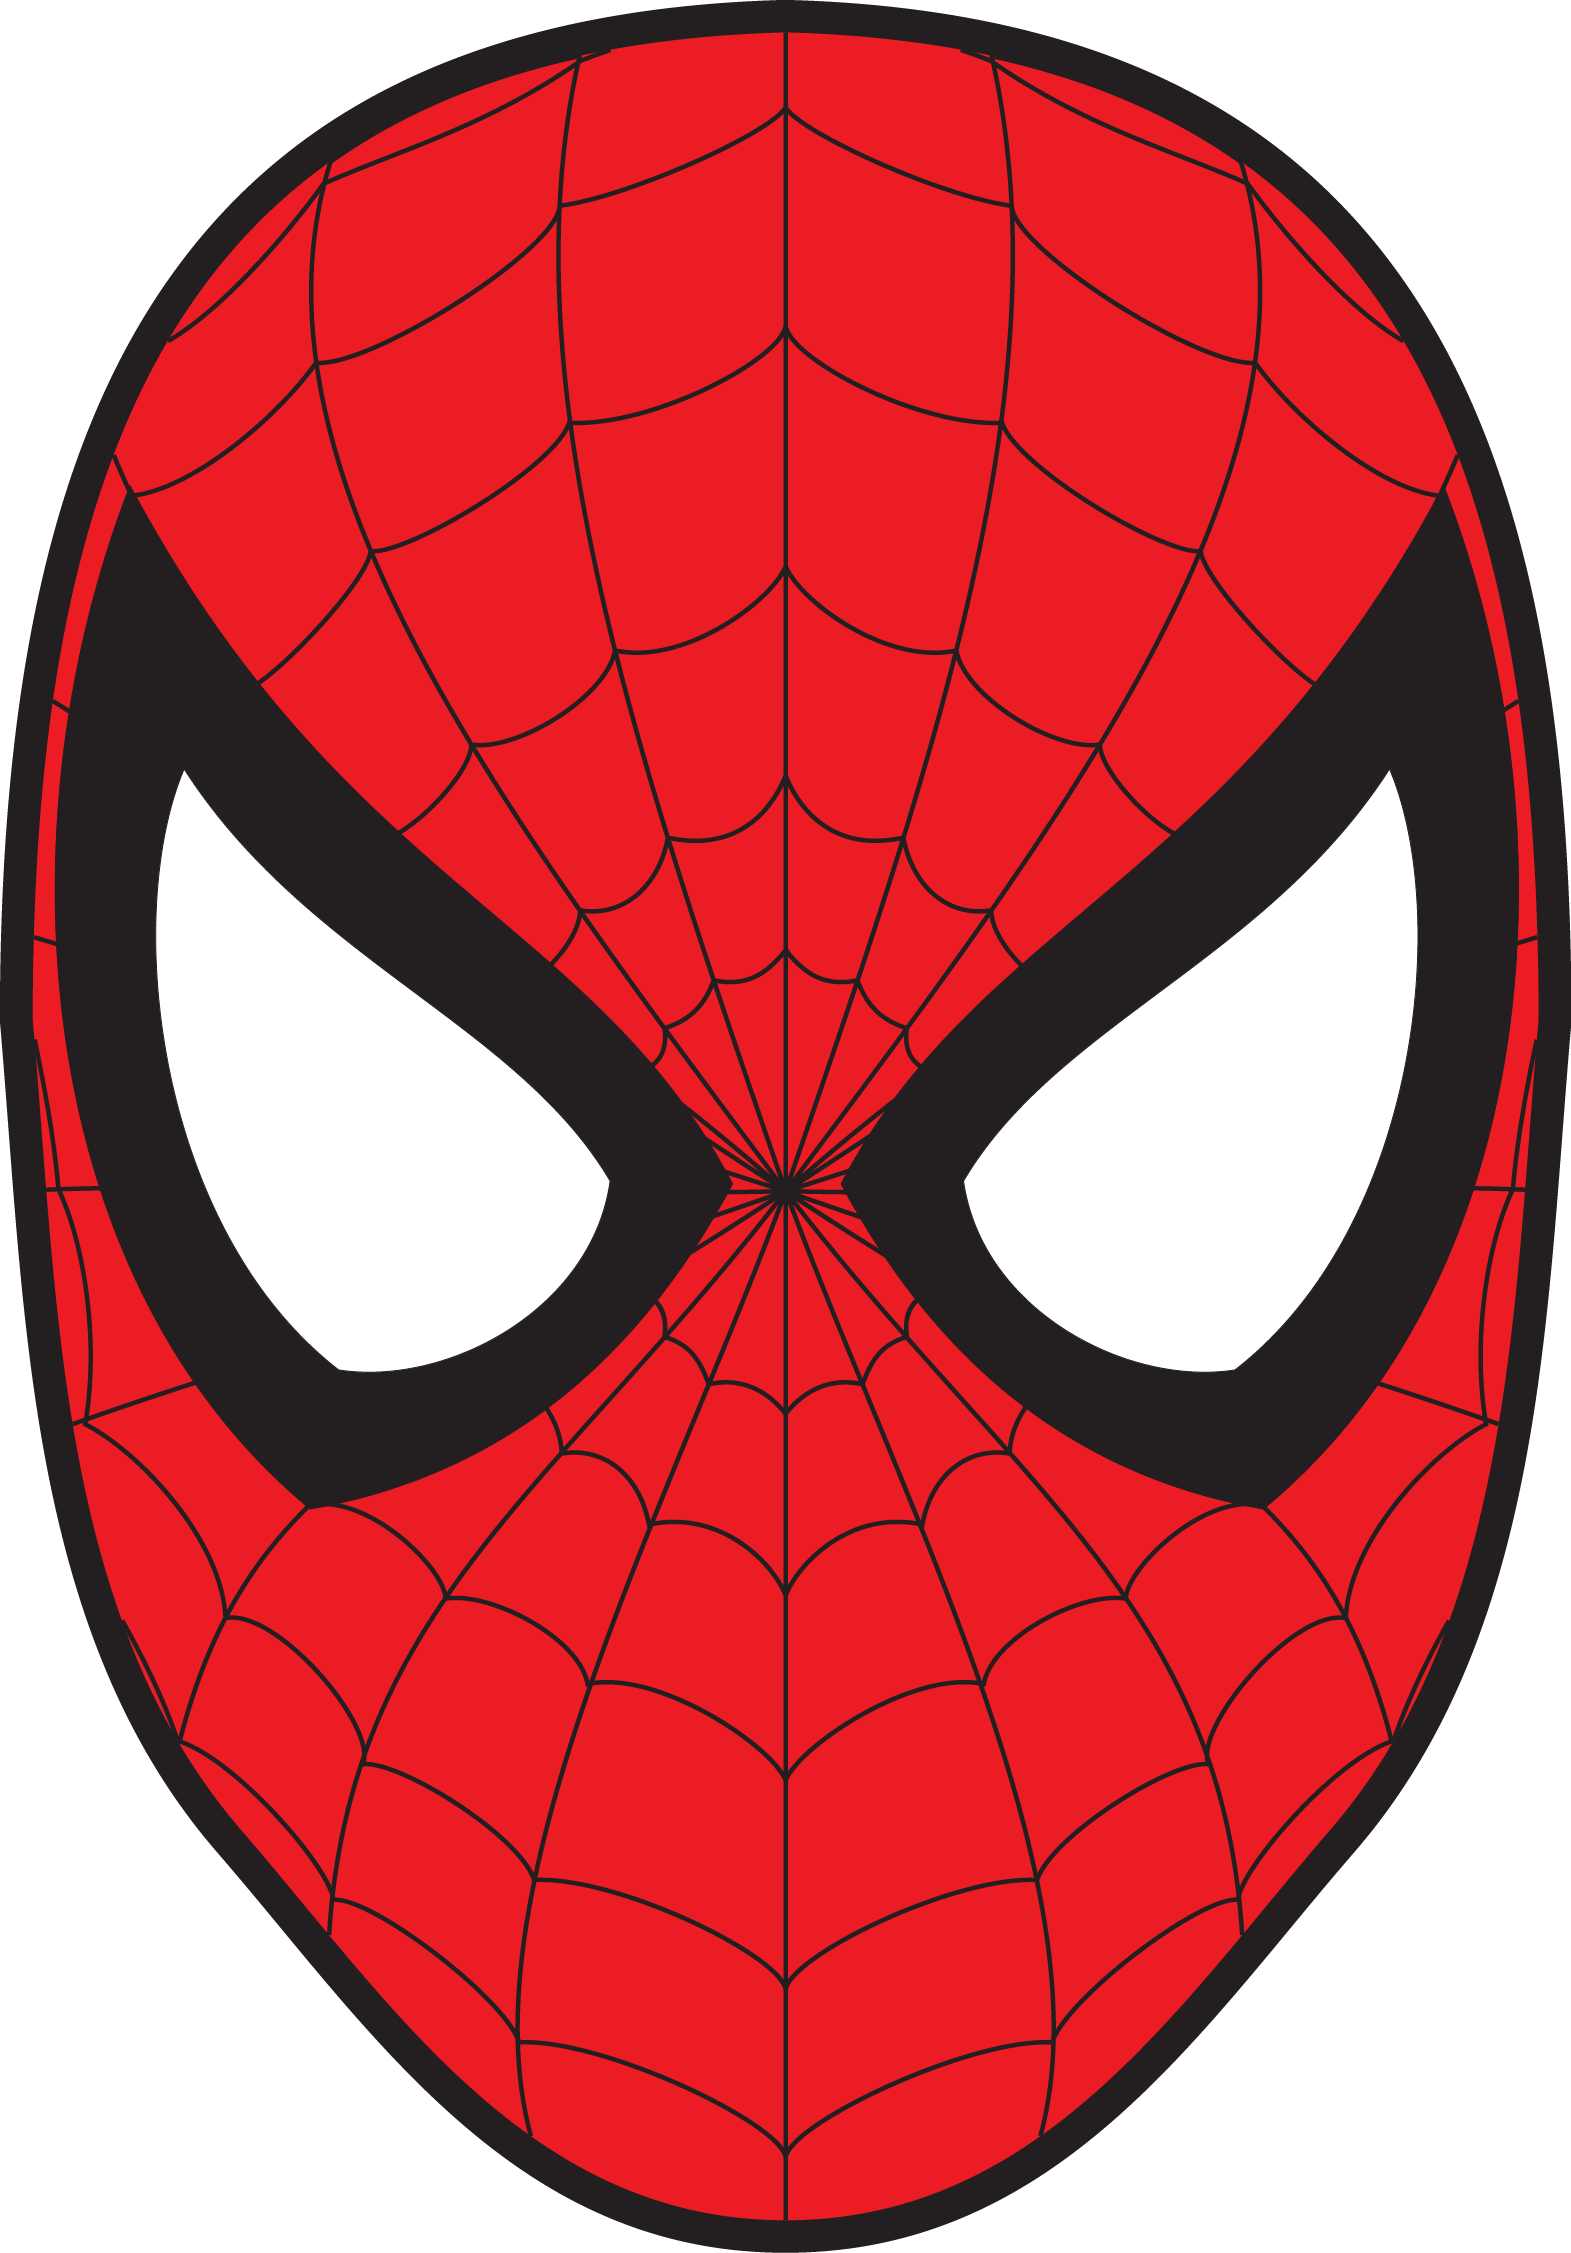 Spiderman Mask Transparent Image